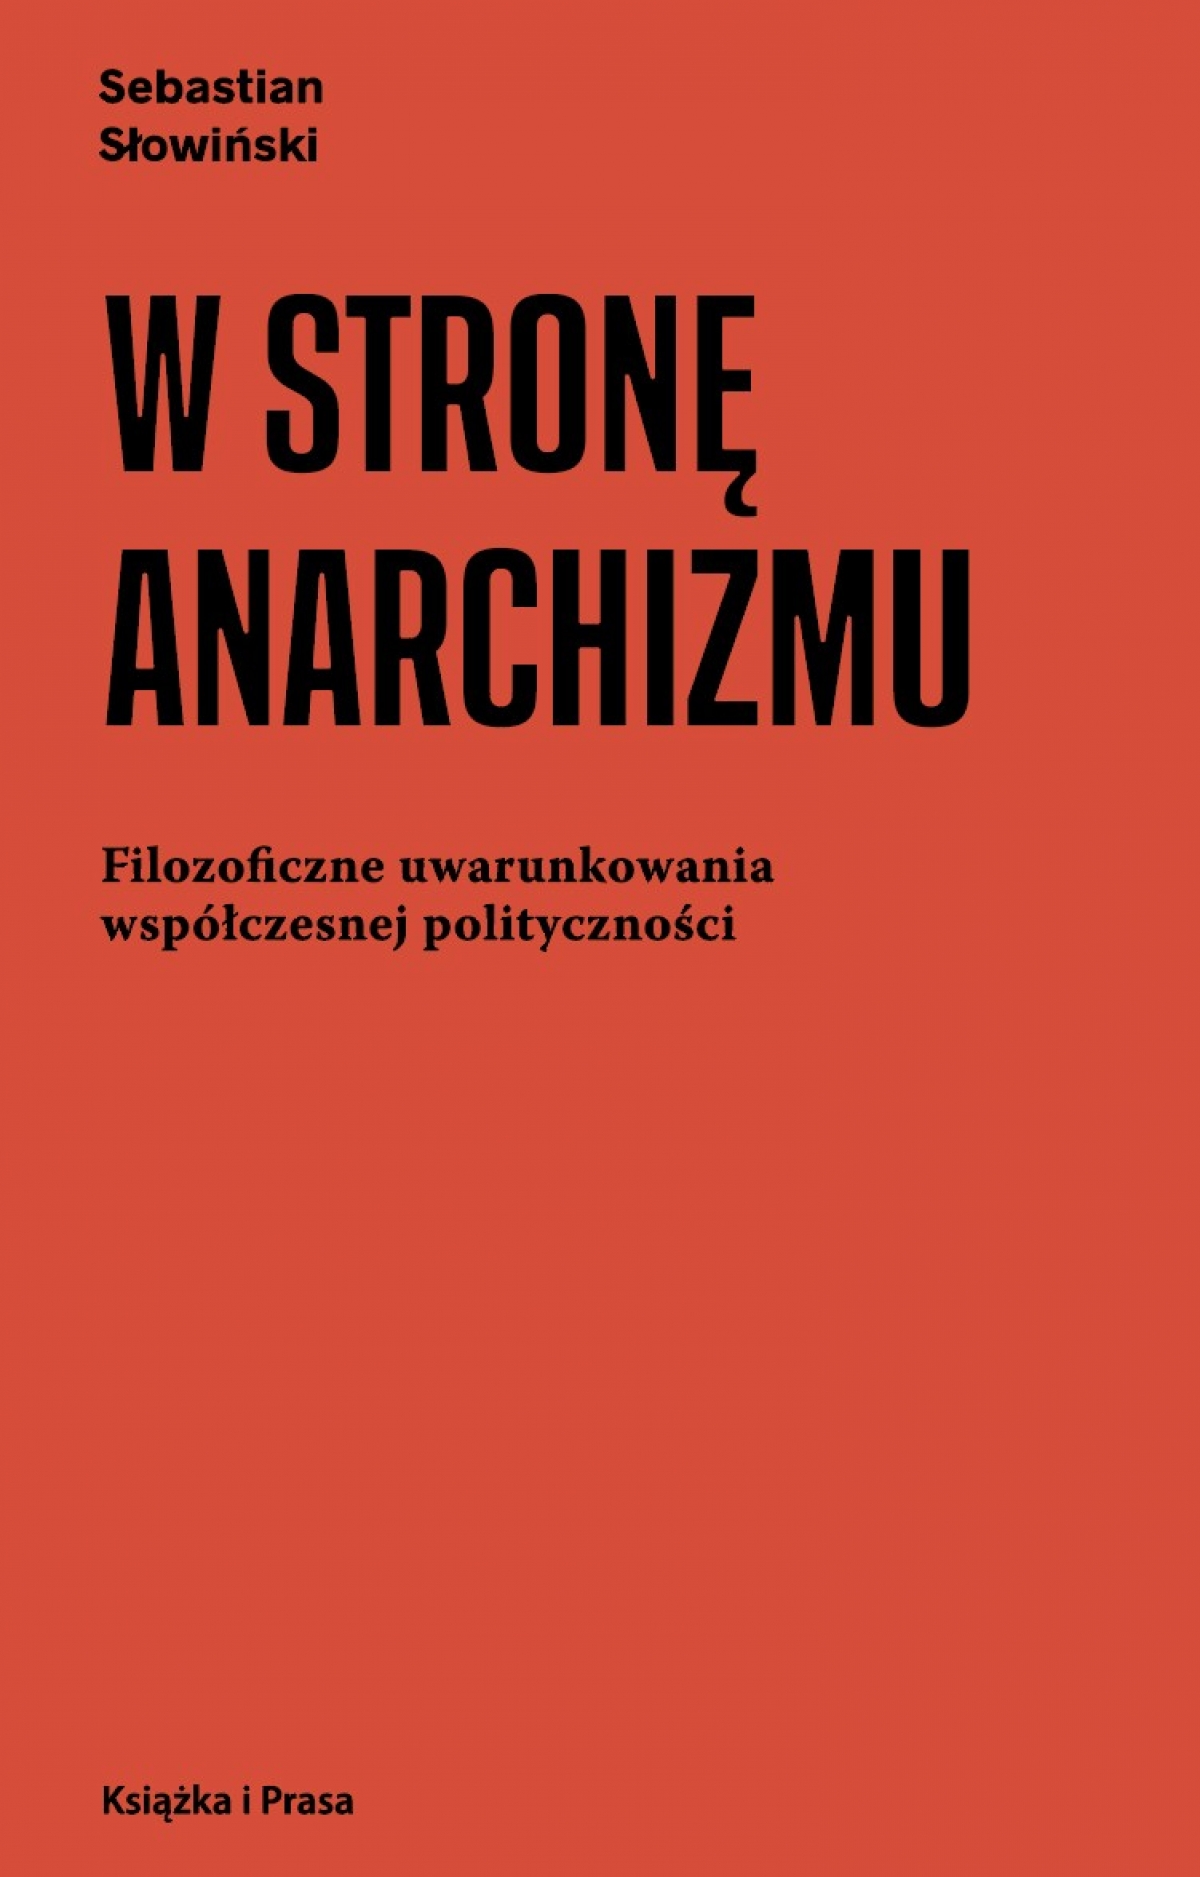 Recenzja:Postanarchizm dla zawiedzionych. Uwagi na marginesie książki Sebastiana Słowińskiego „W stronę anarchizmu”